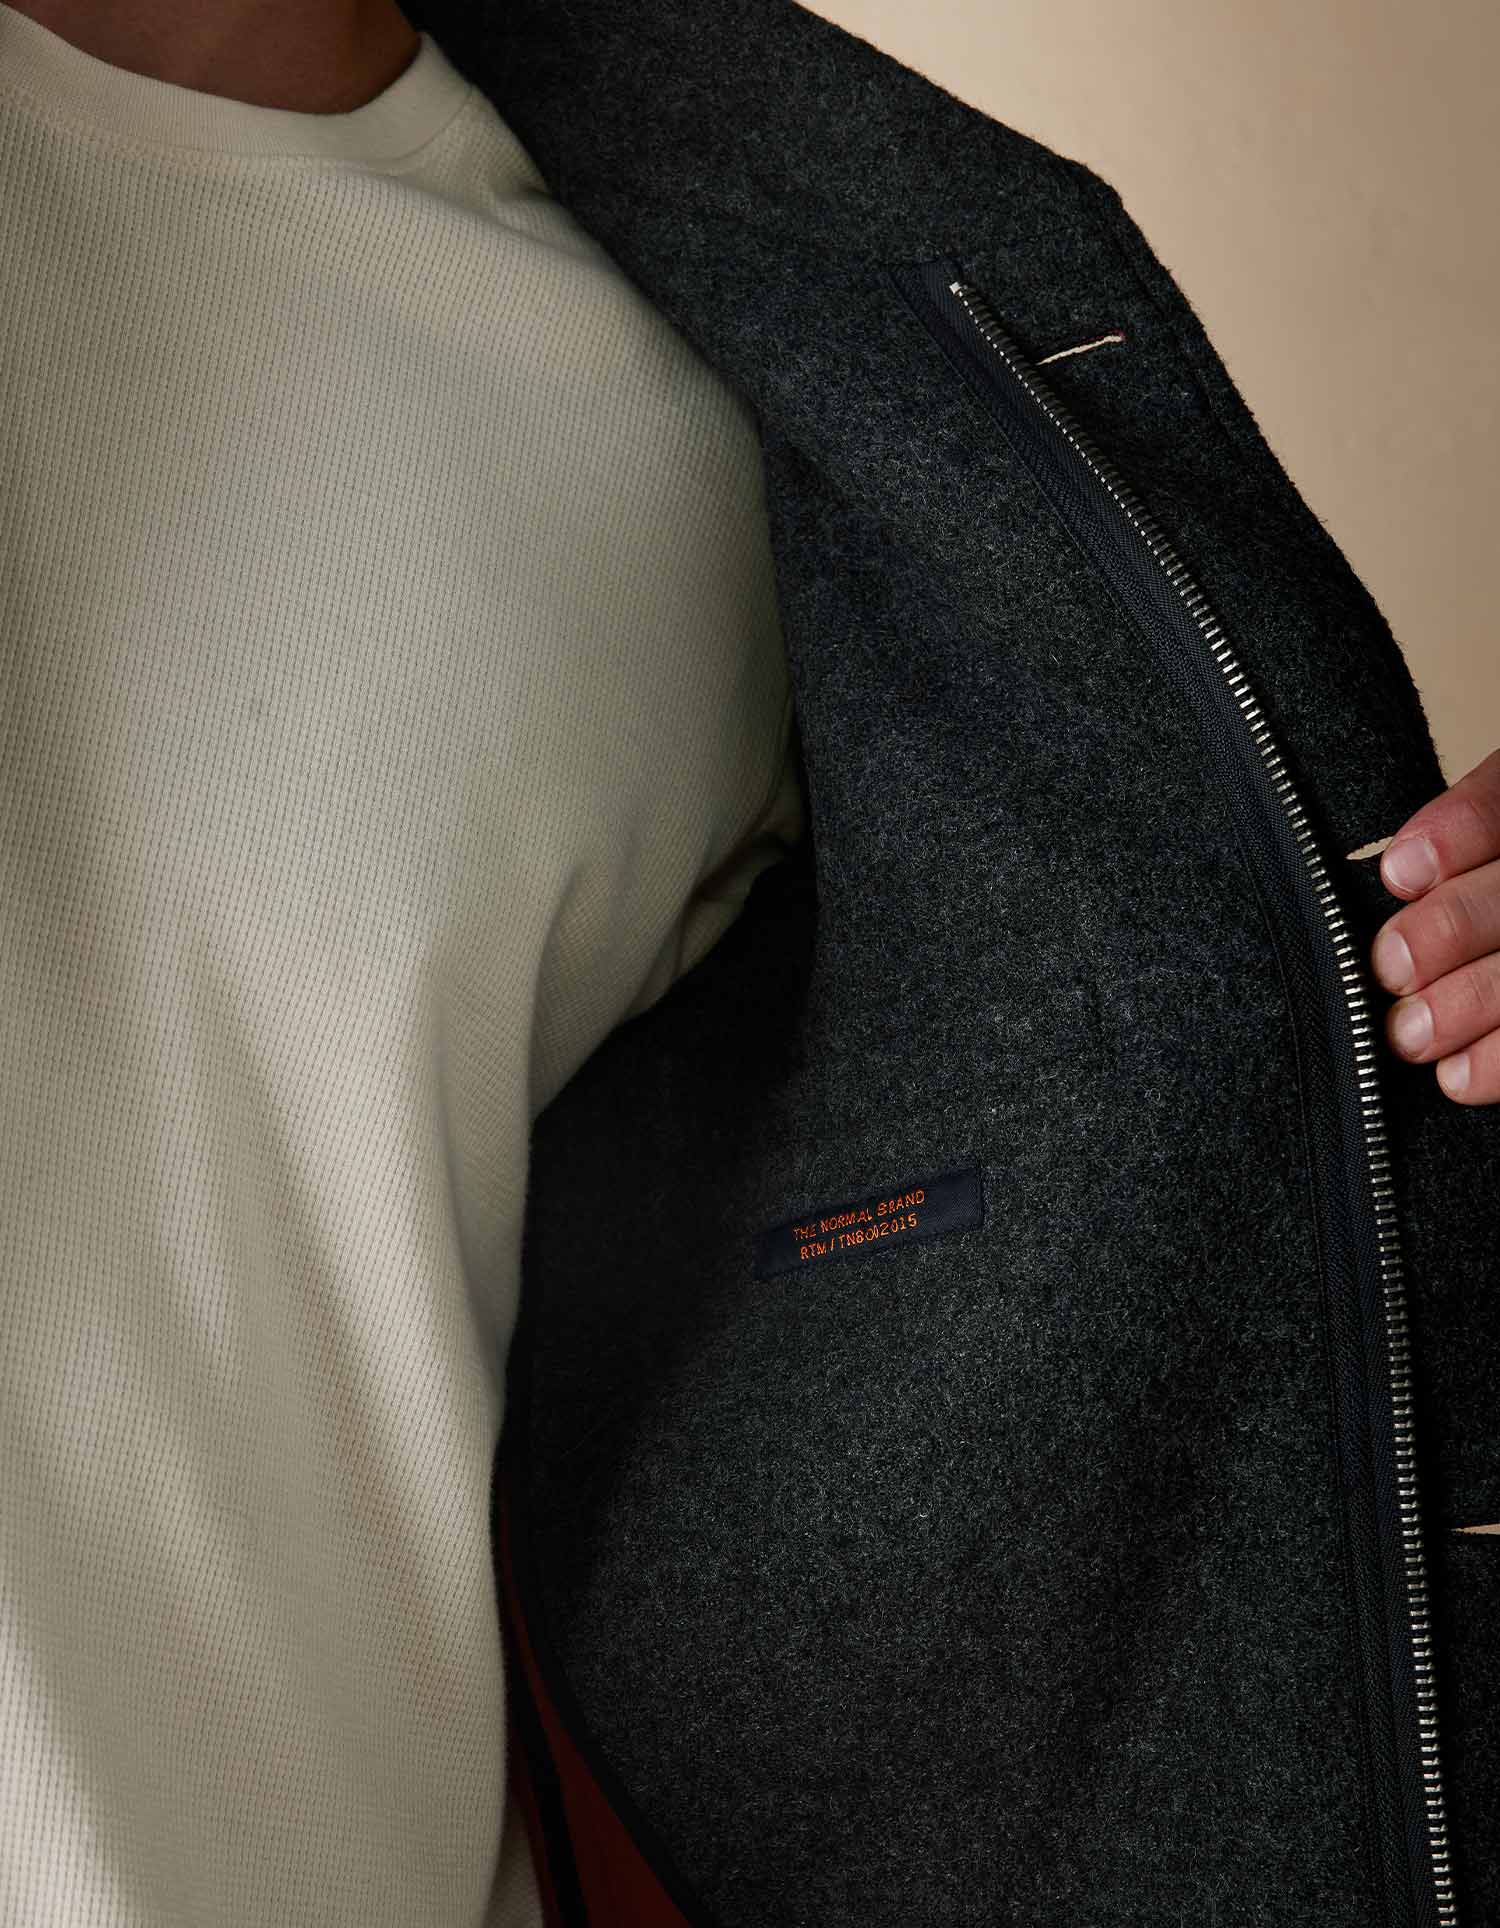 Normal Brand Balboa City Peacoat - Grey - 2 - Tops - Coats & Jackets